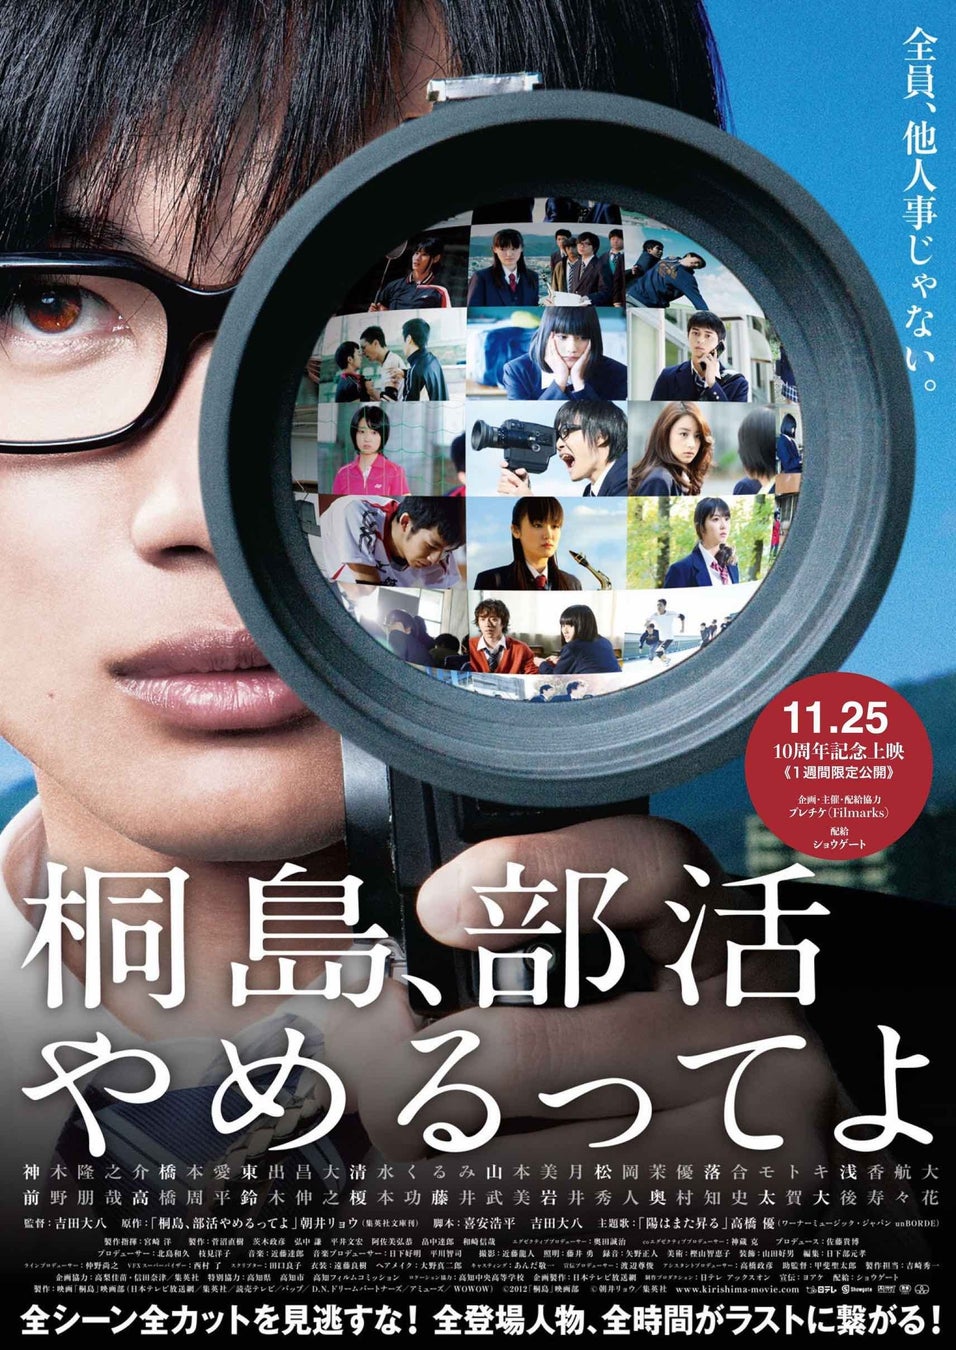 公開10周年記念上映『桐島、部活やめるってよ』来場者特典配布のお知らせ